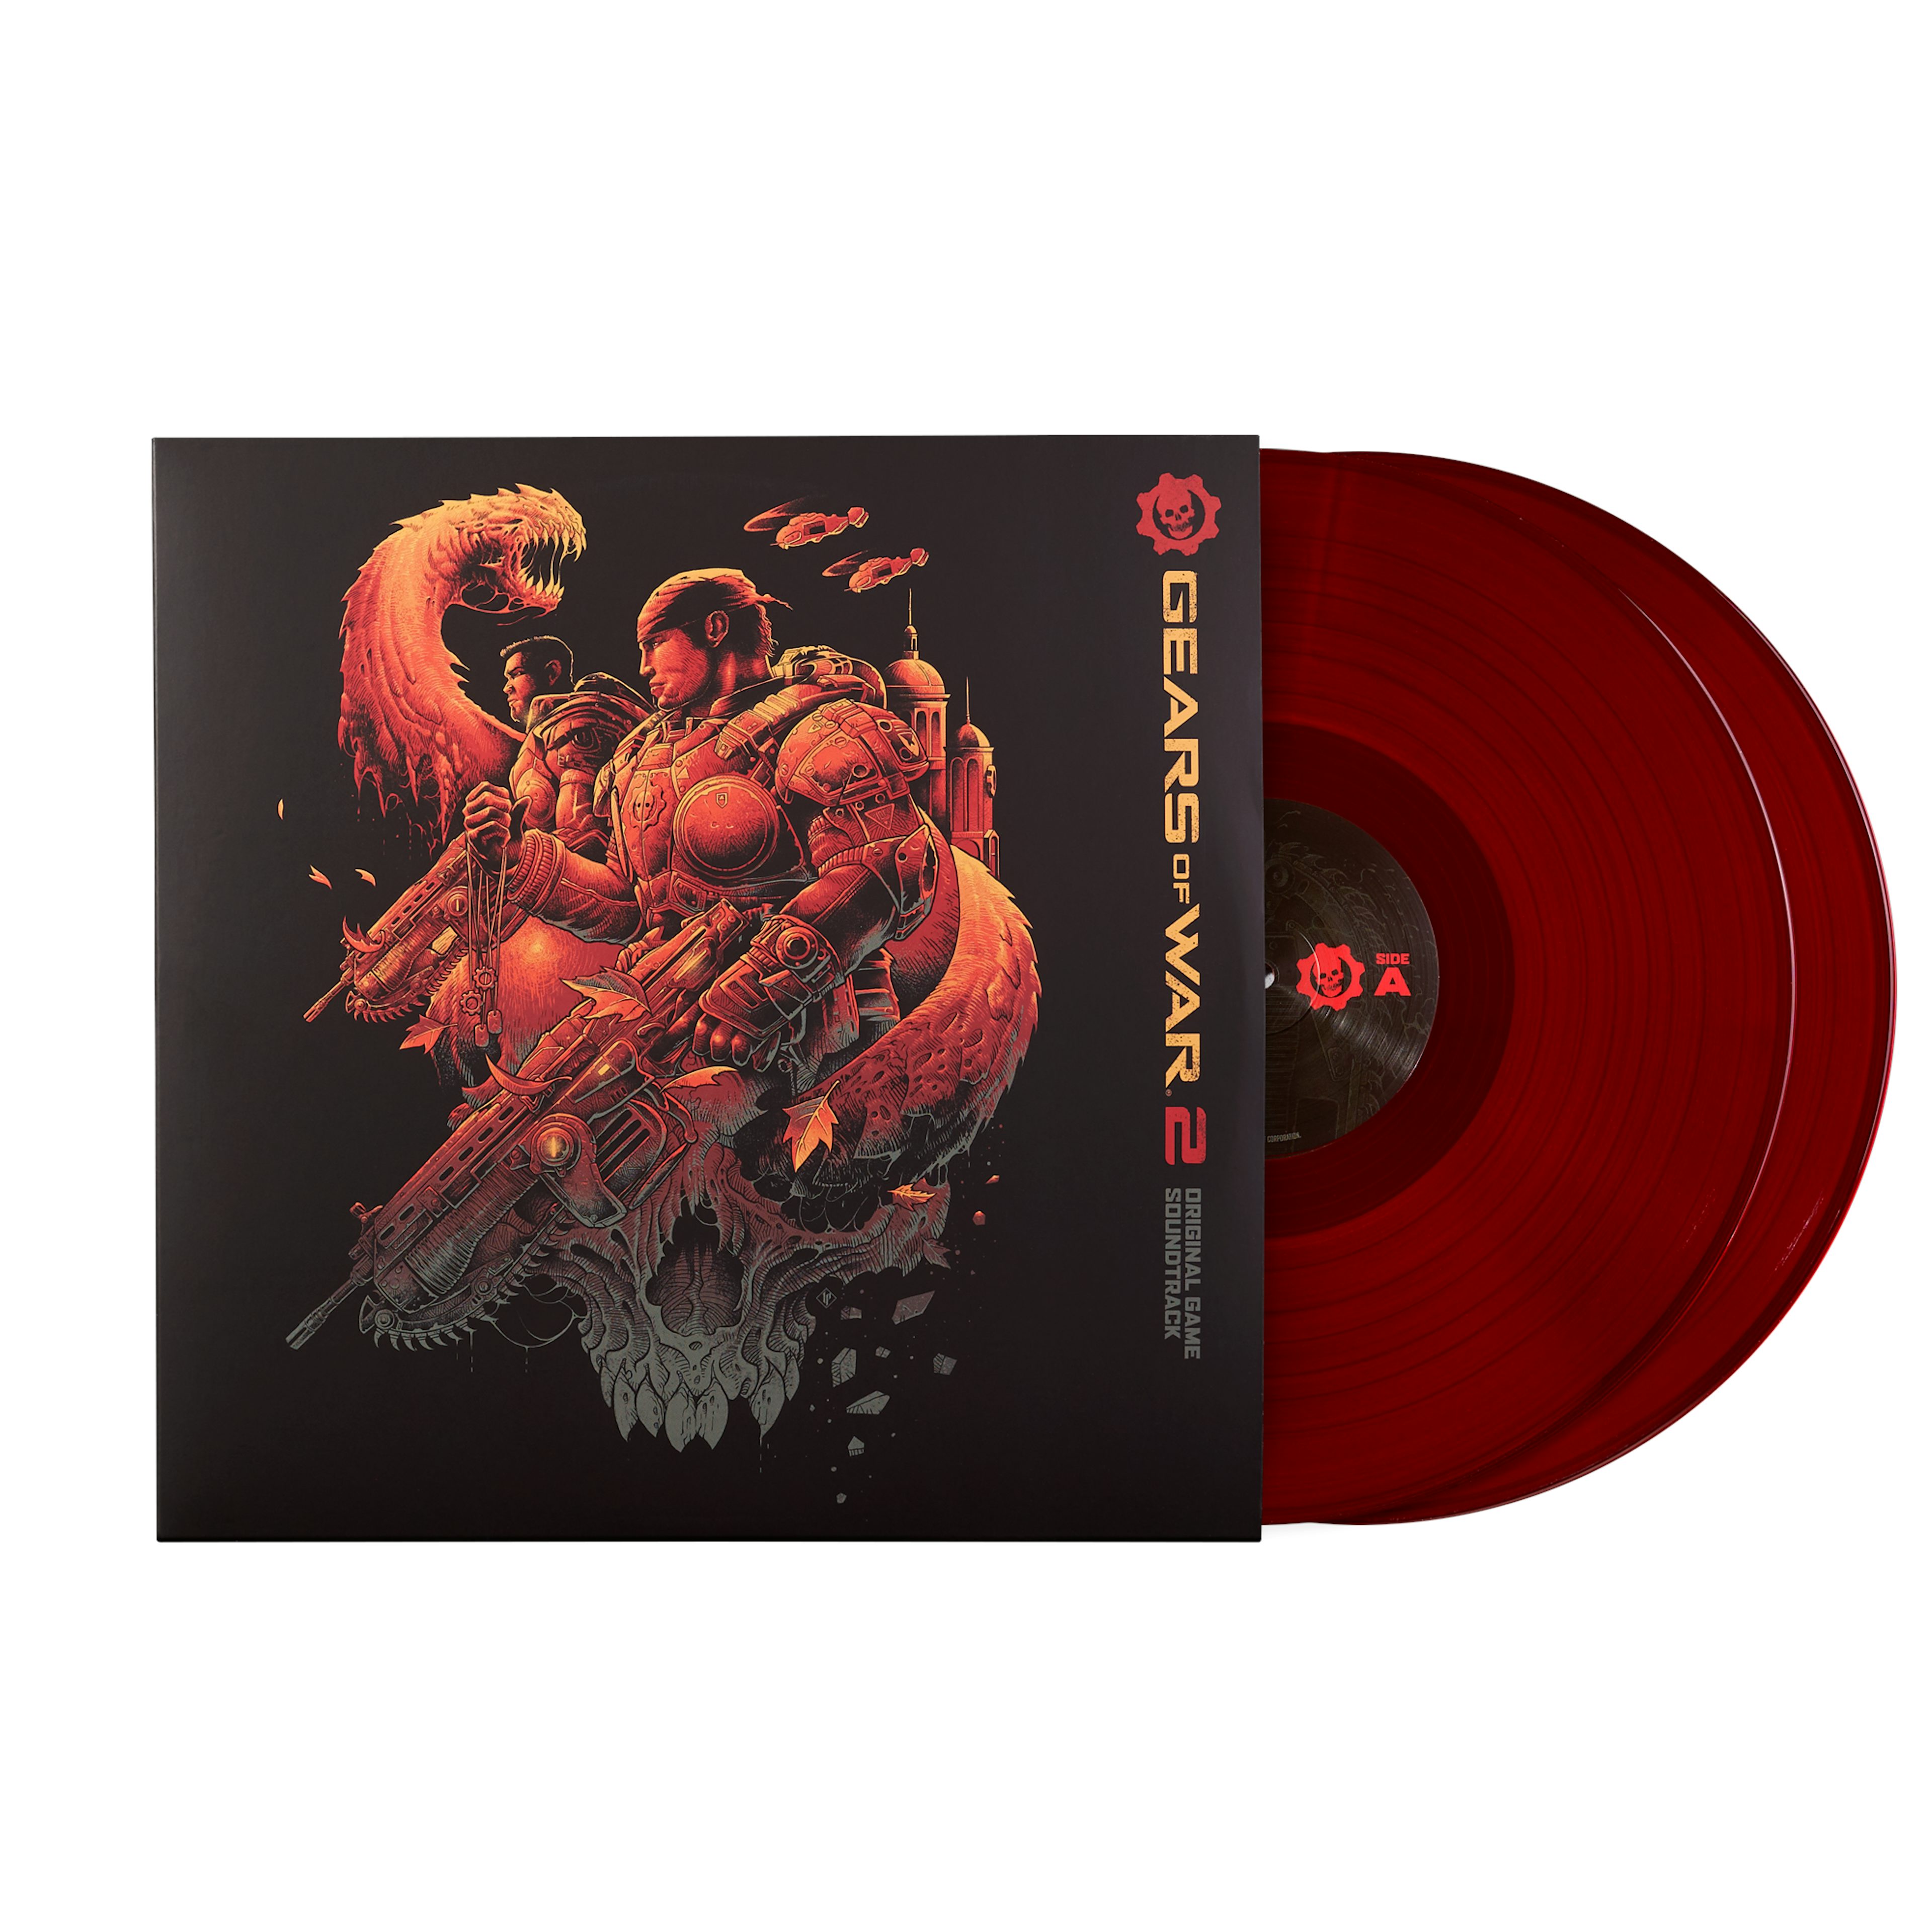 Gears 2 Soundtrack) -Steve Jablonsky (2xLP Vinyl Record)